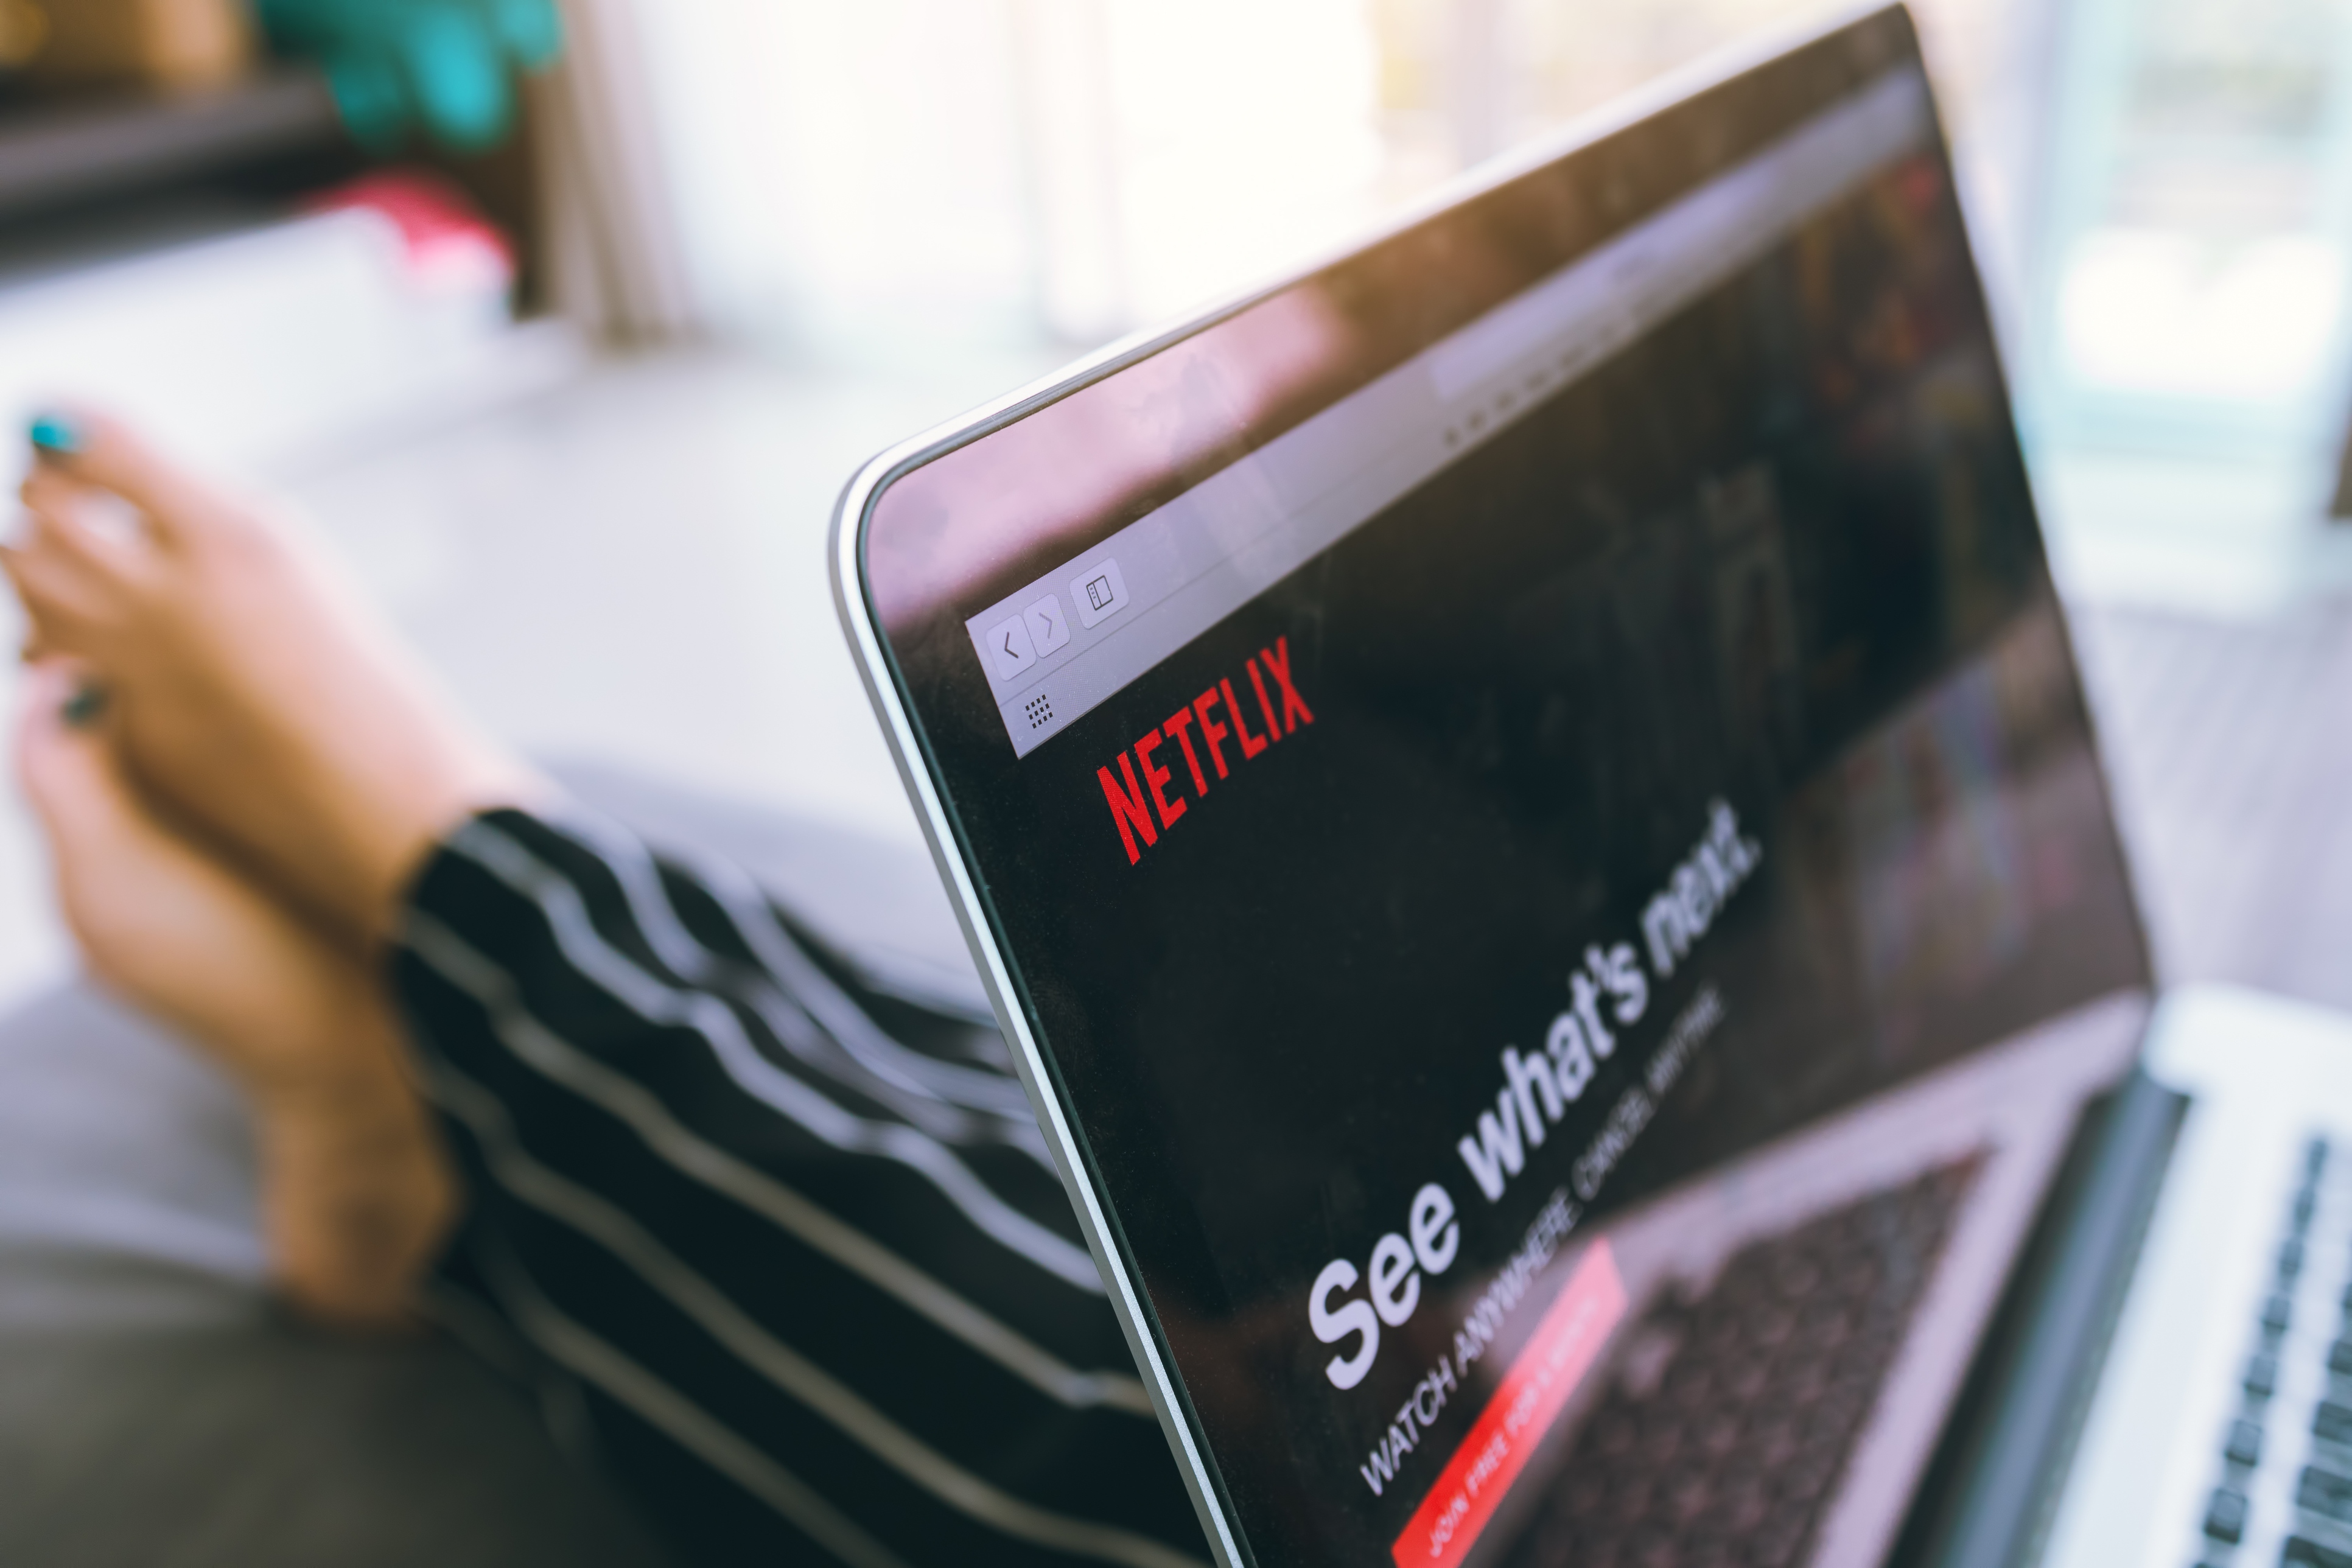 Aprenda as maiores lições da Netflix sobre marketing digital